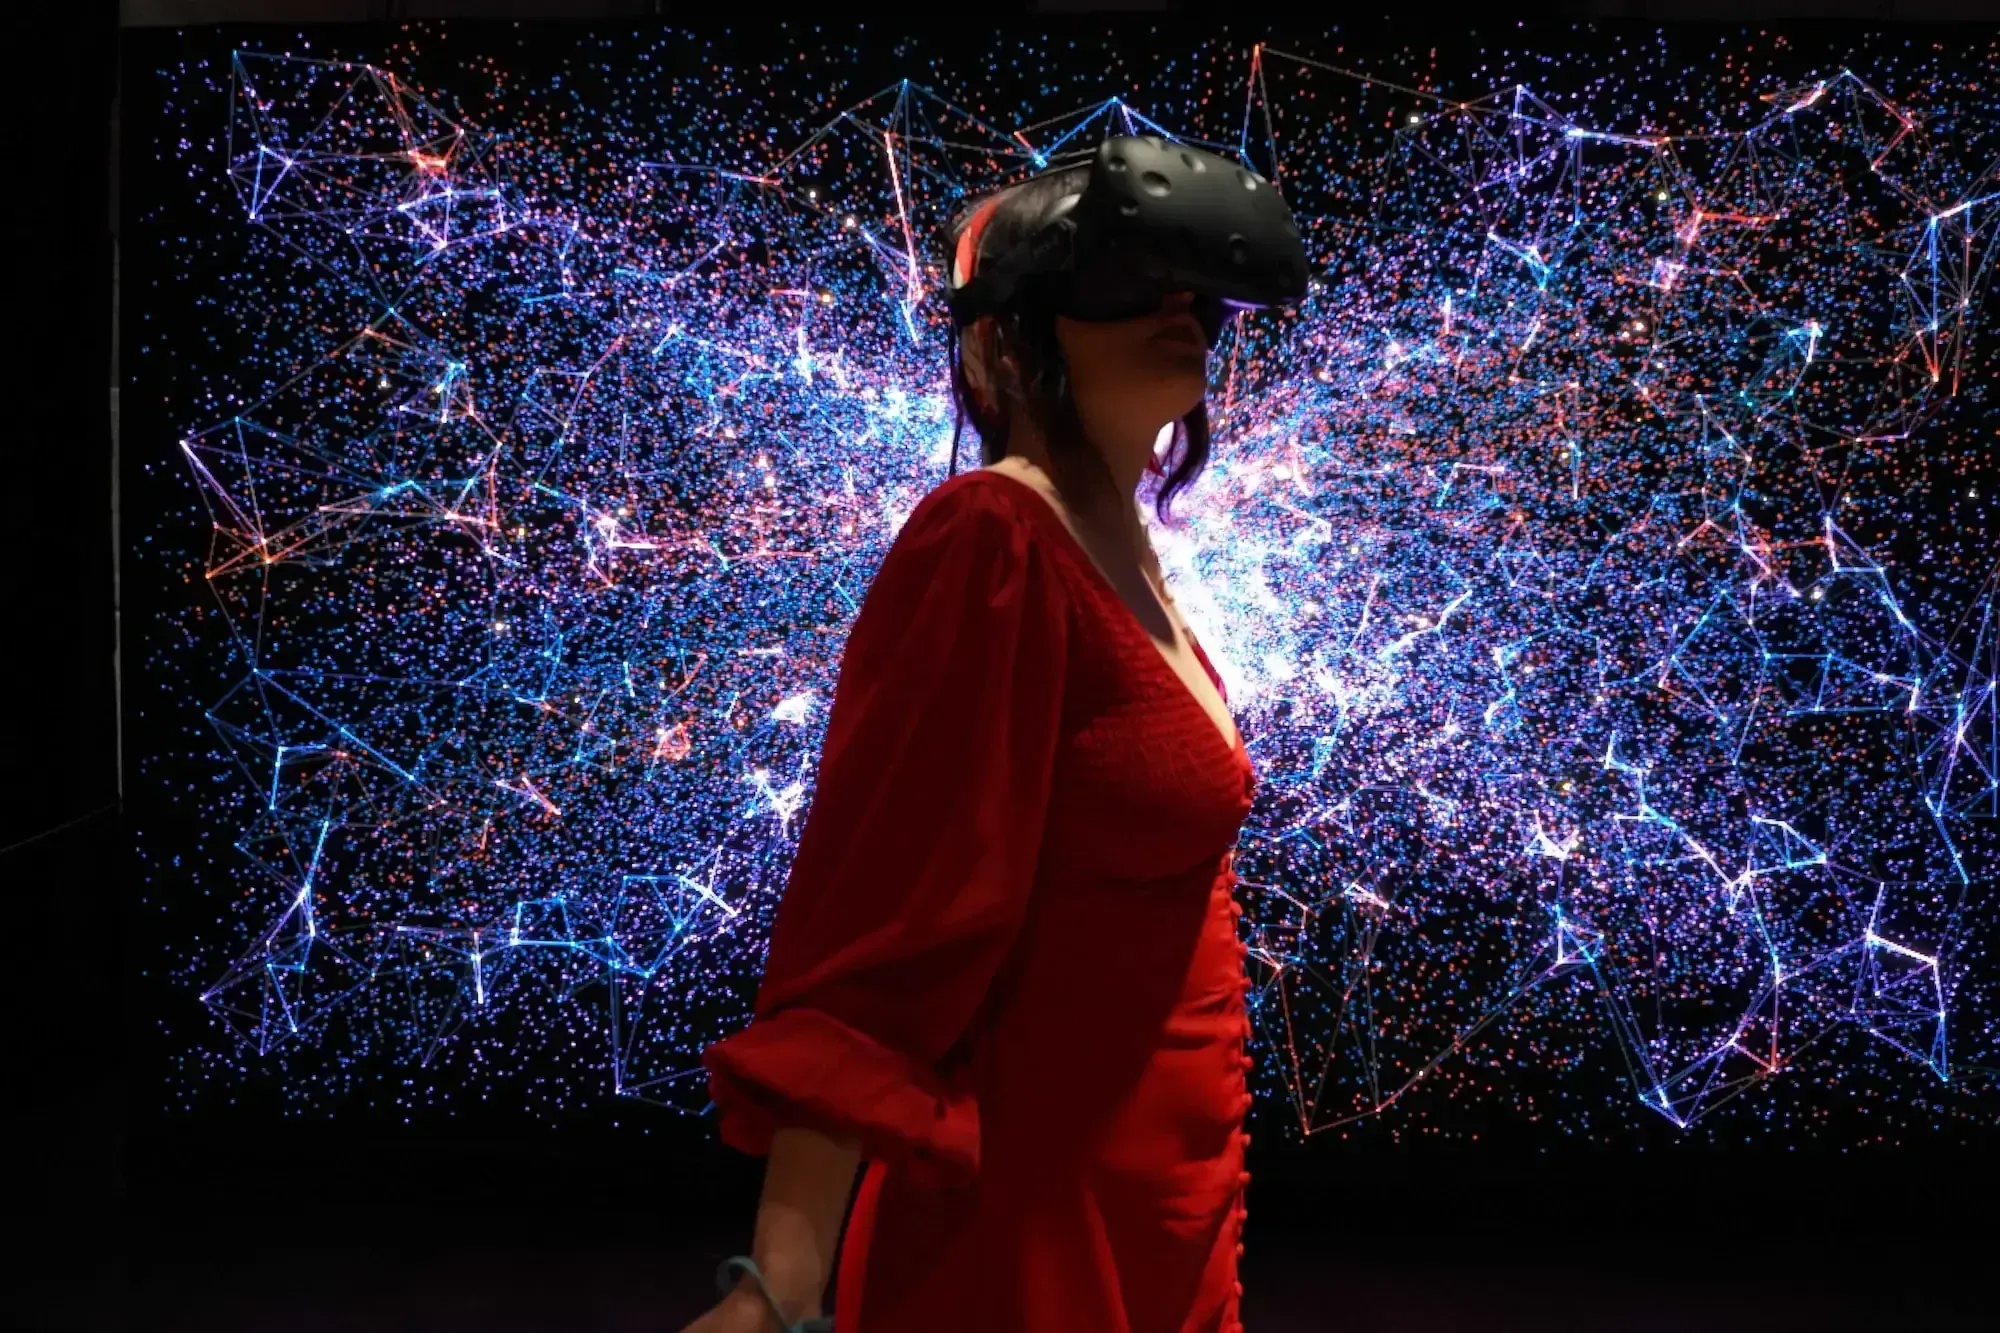 Frau in rotem Kleid mit VR Brille auf in einem dunklen Raum voller bunter Lichtpunkte.